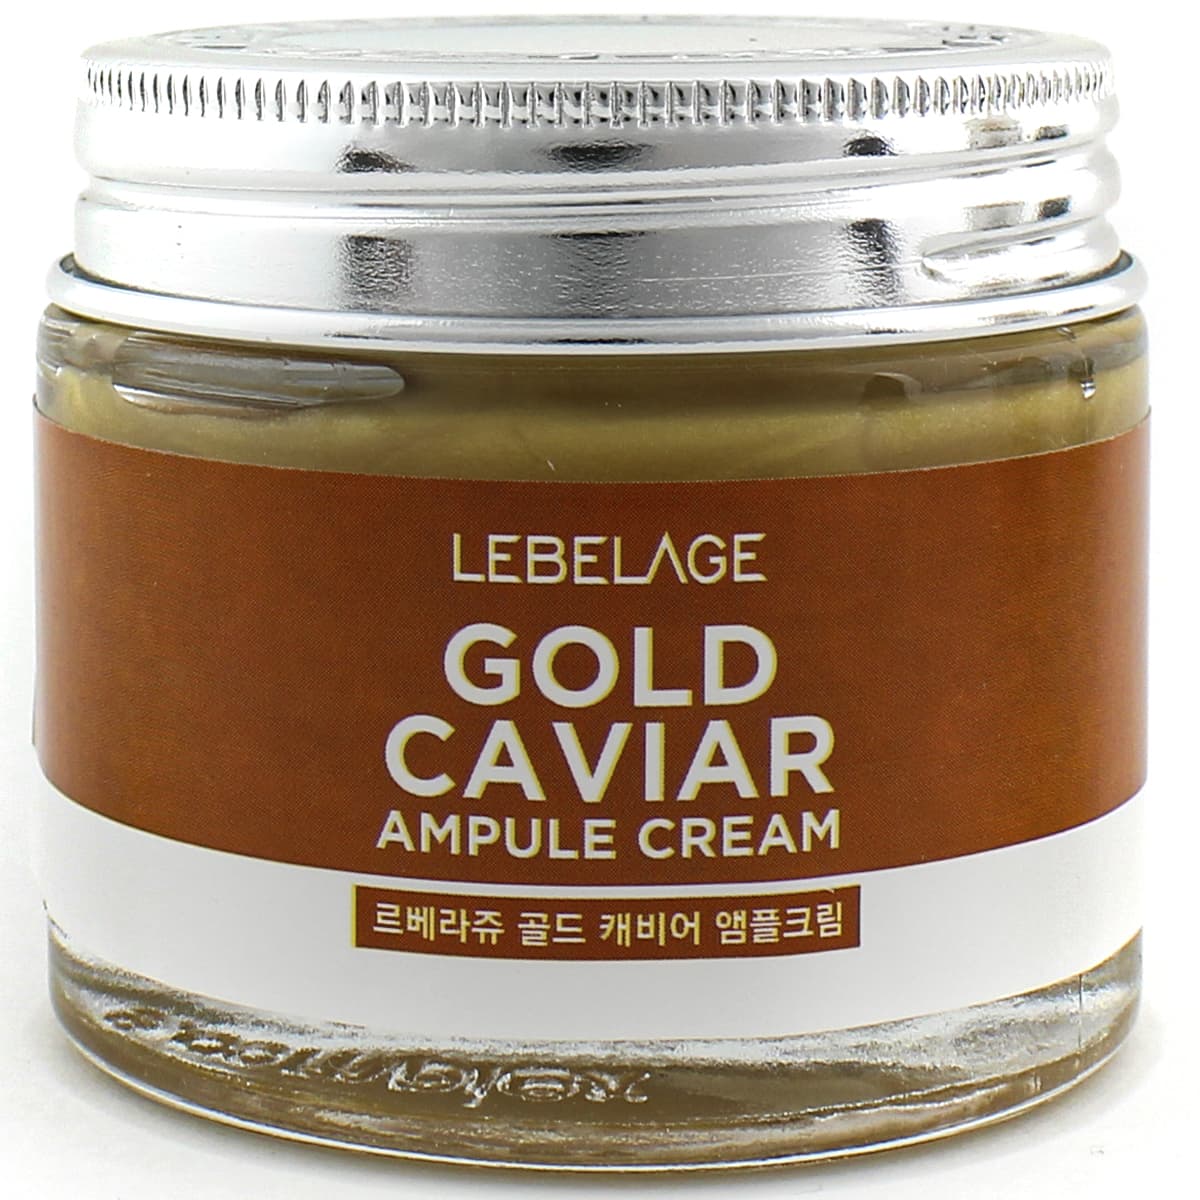 Картинка Ампульный крем для лица с экстрактом икры Lebelage Ampule Cream Gold Carviar, 70 мл BeautyConceptPro